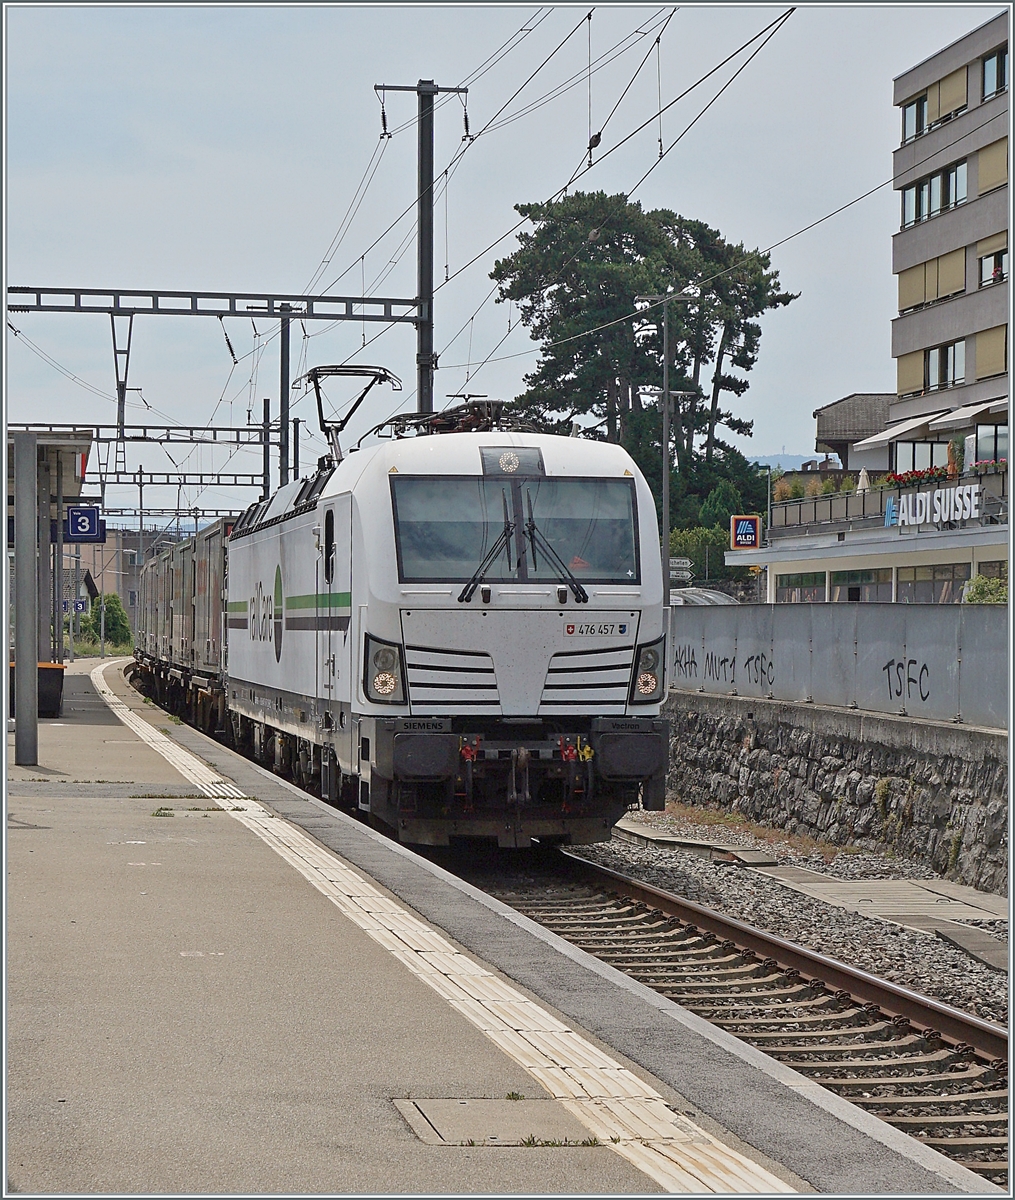 Die railCare Rem 476 457 mit einem Coop-RailCare Zug bei der Durchfahrt in Versoix.

28. Juni 2021